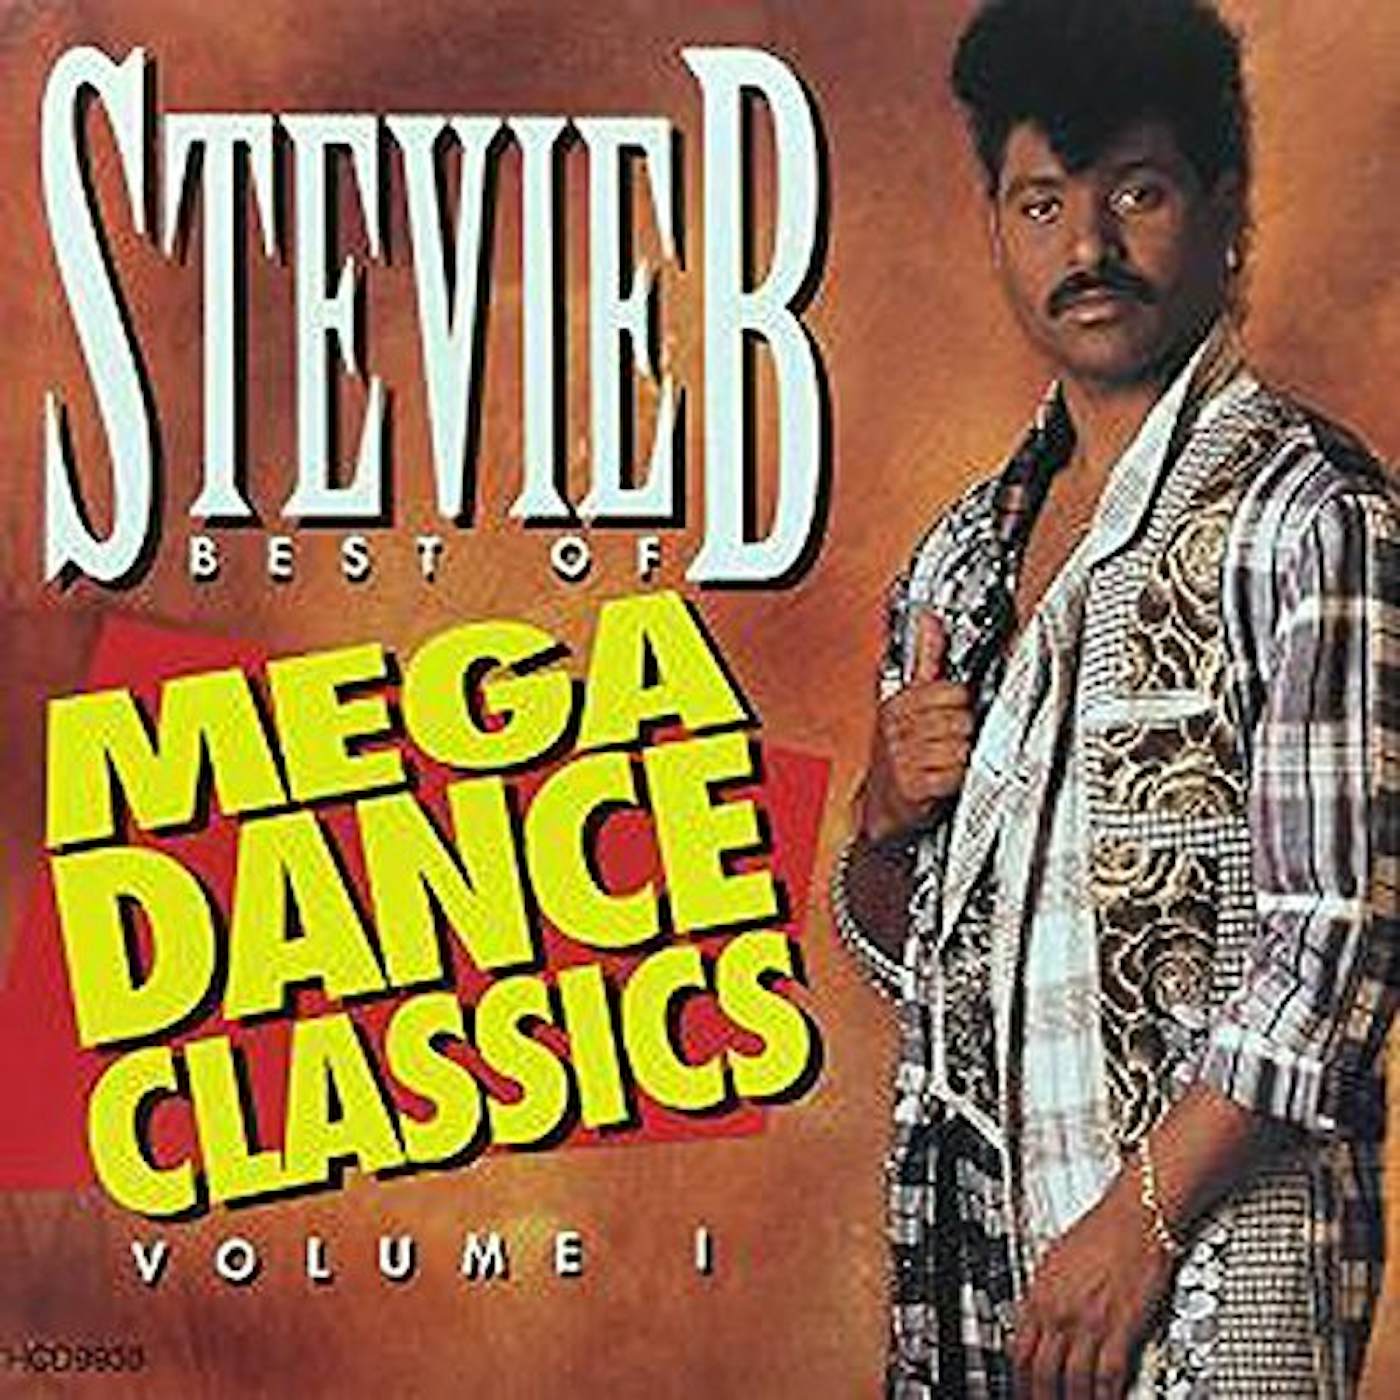 Stevie B BEST OF MEGA DANCE CLASSICS VOLUME 1 CD